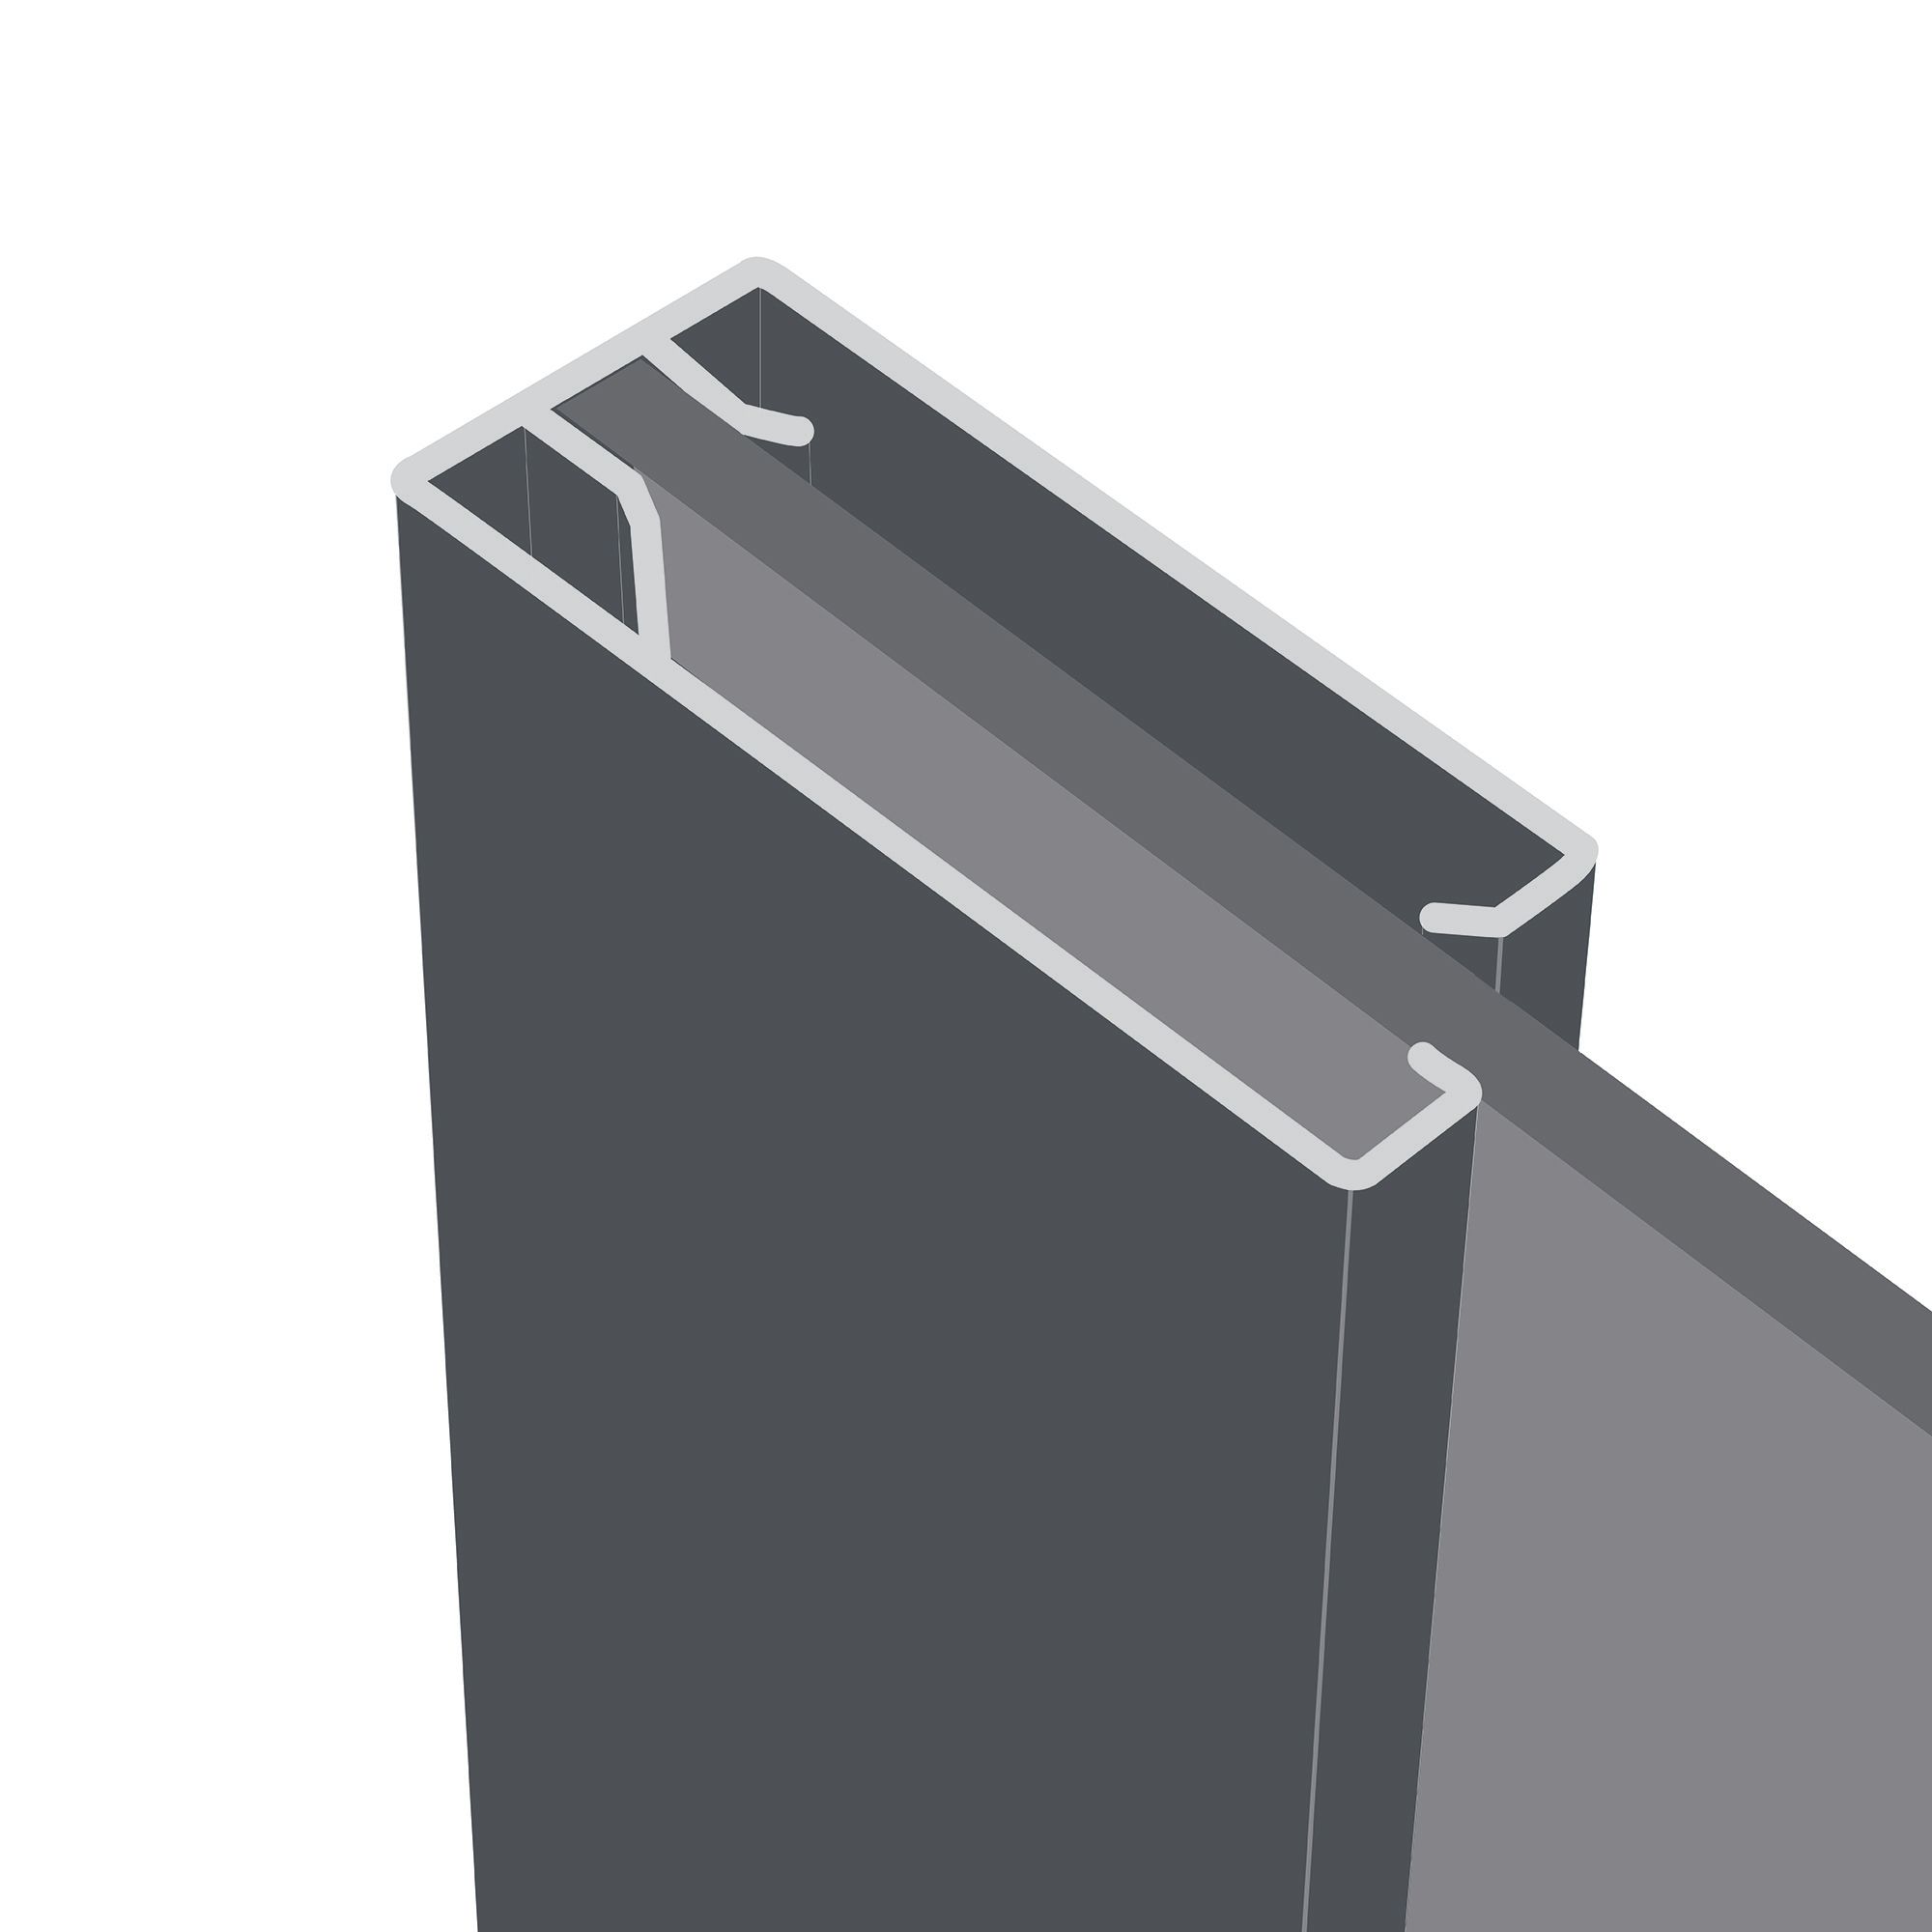 Panel Shaker Mirrored Graphite 3 door Sliding Wardrobe Door kit (H)2260mm (W)1680mm